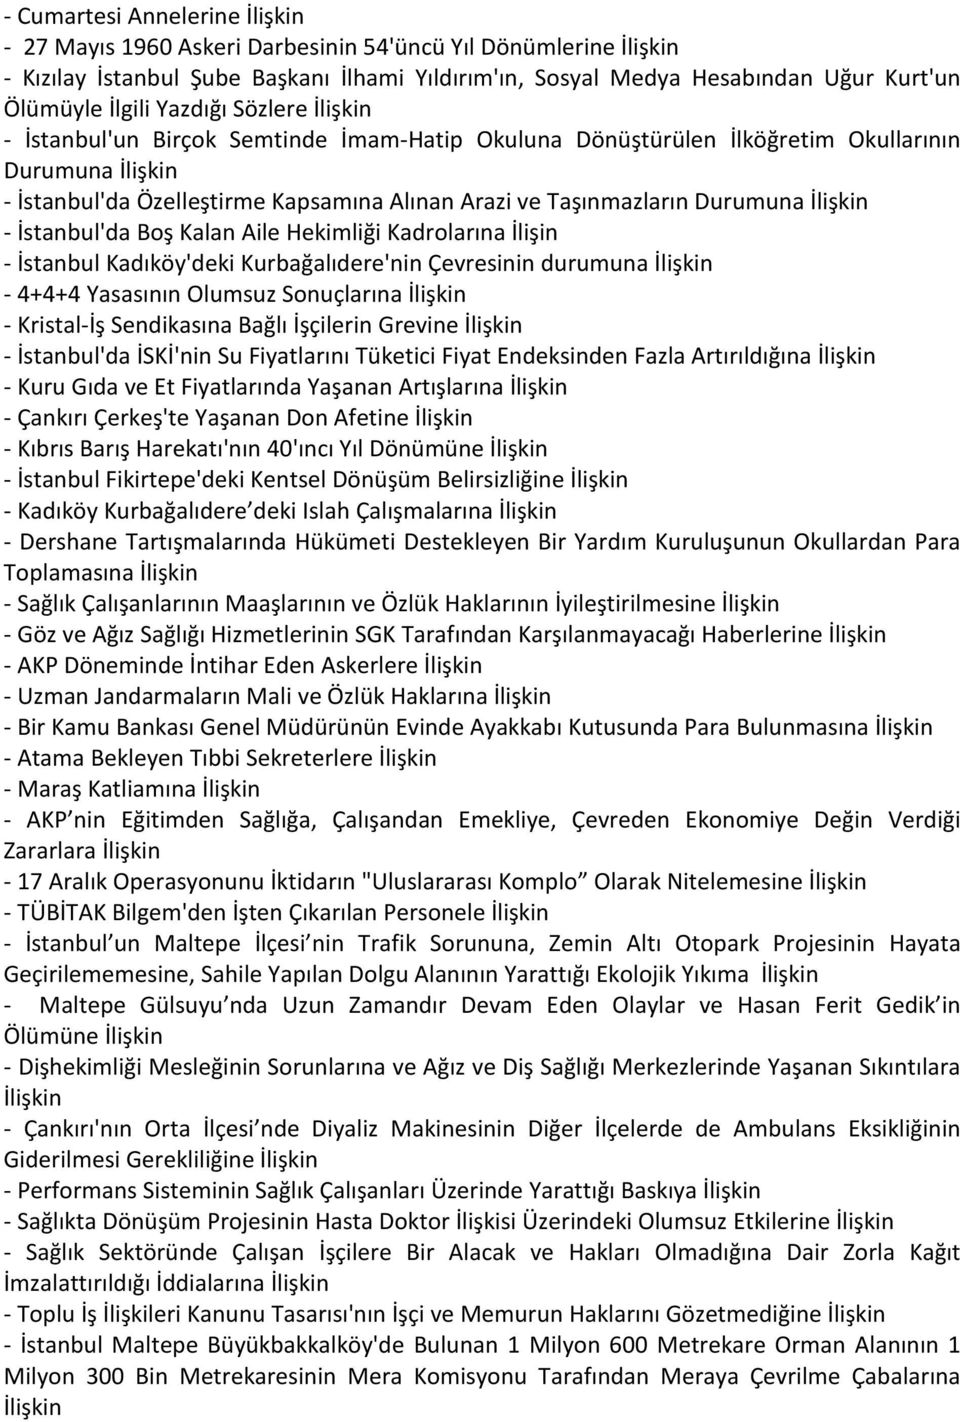 Kalan Aile Hekimliği Kadrolarına İlişin - İstanbul Kadıköy'deki Kurbağalıdere'nin Çevresinin durumuna - 4+4+4 Yasasının Olumsuz Sonuçlarına - Kristal-İş Sendikasına Bağlı İşçilerin Grevine -